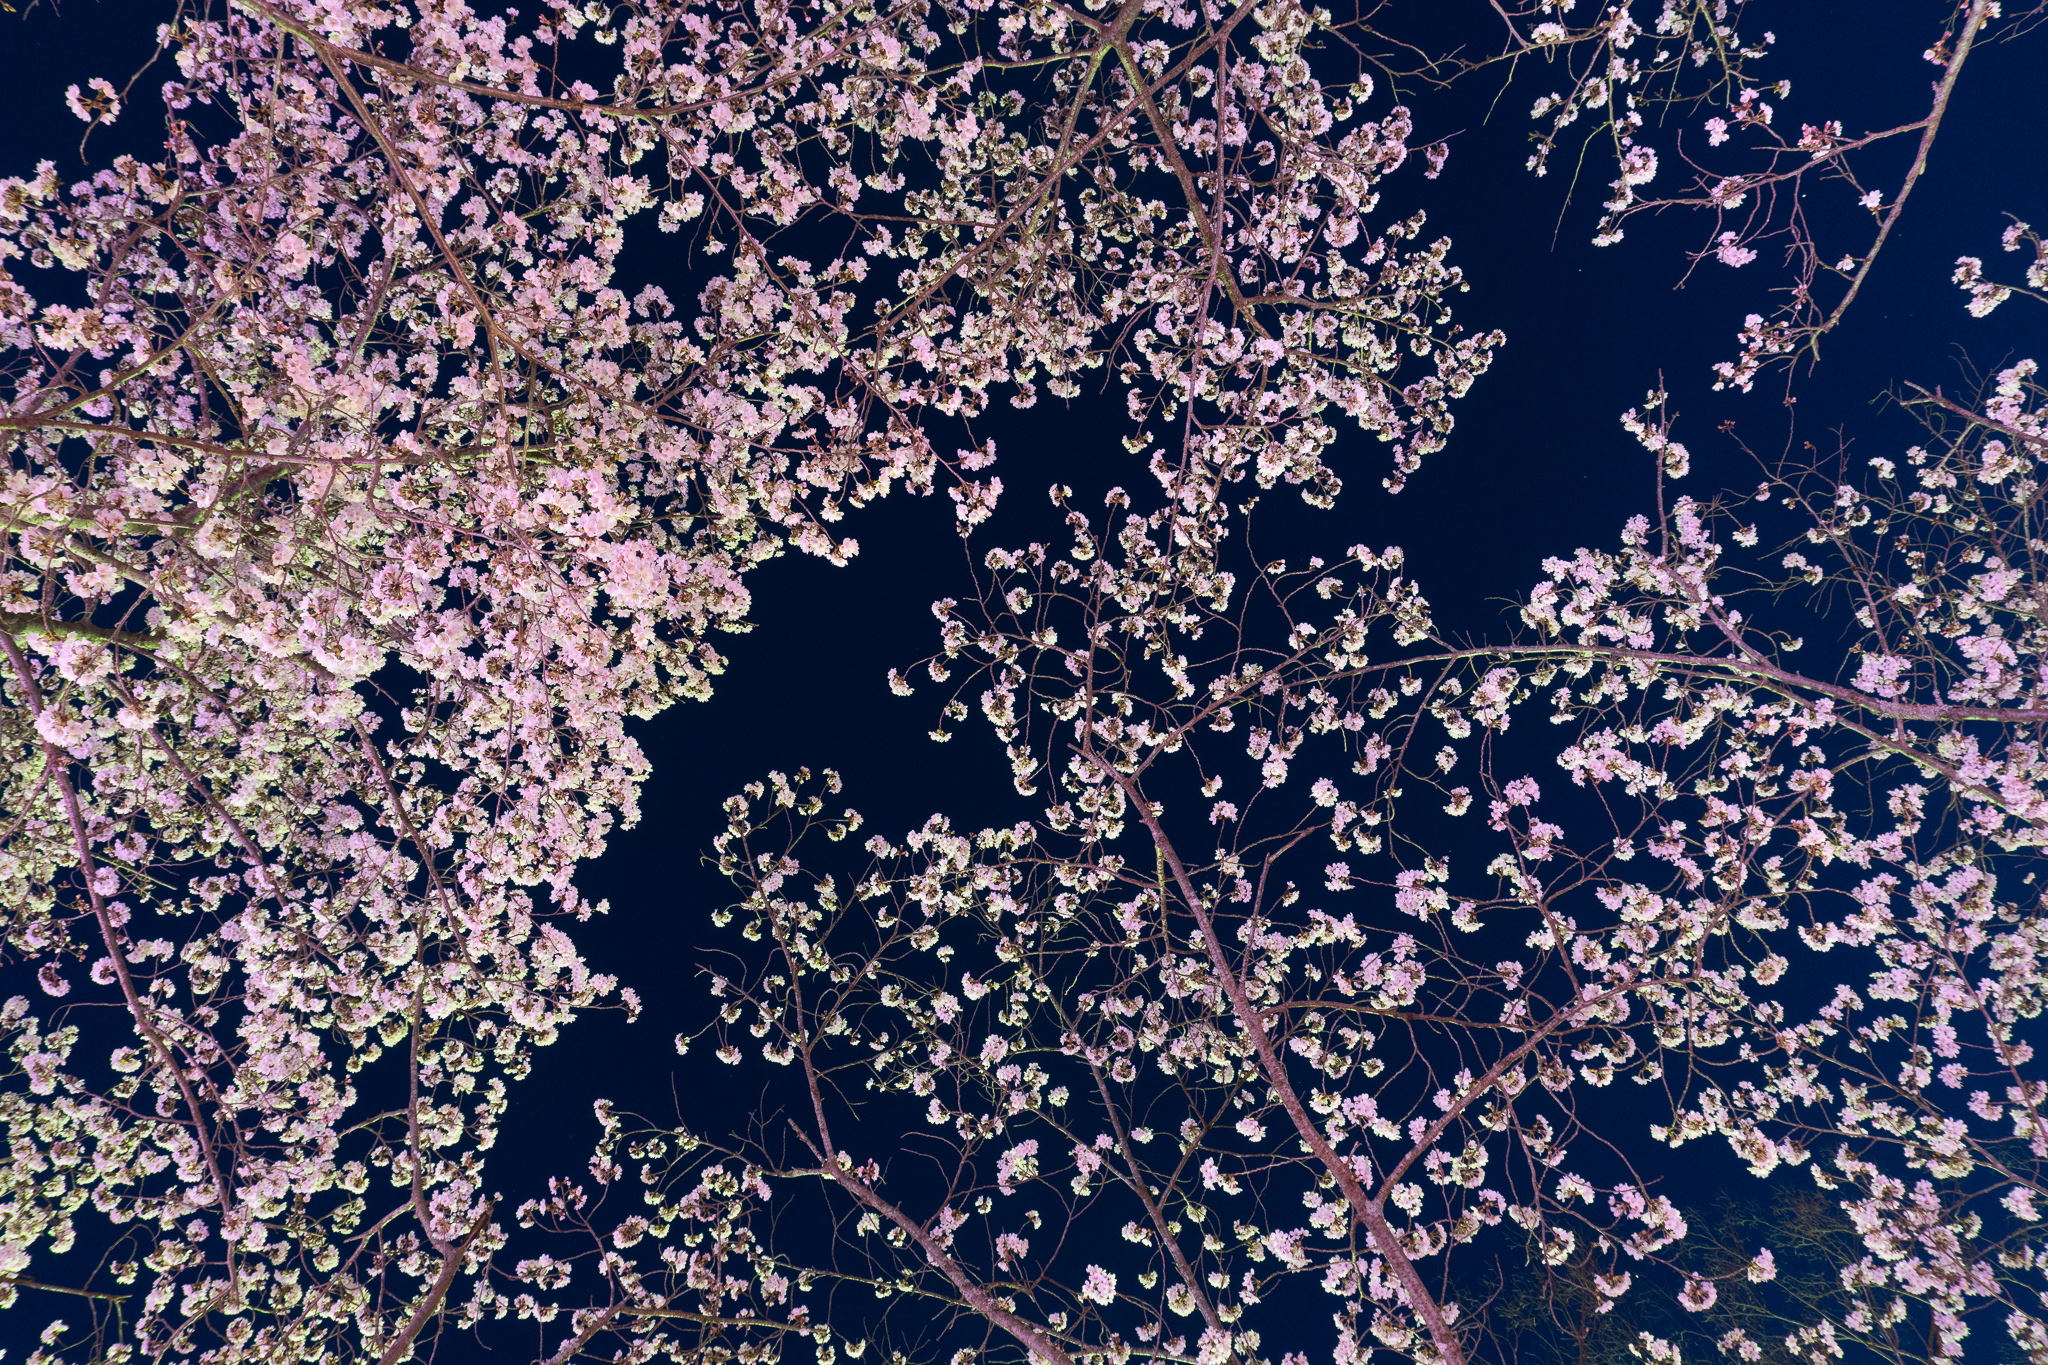 昨日の夜桜